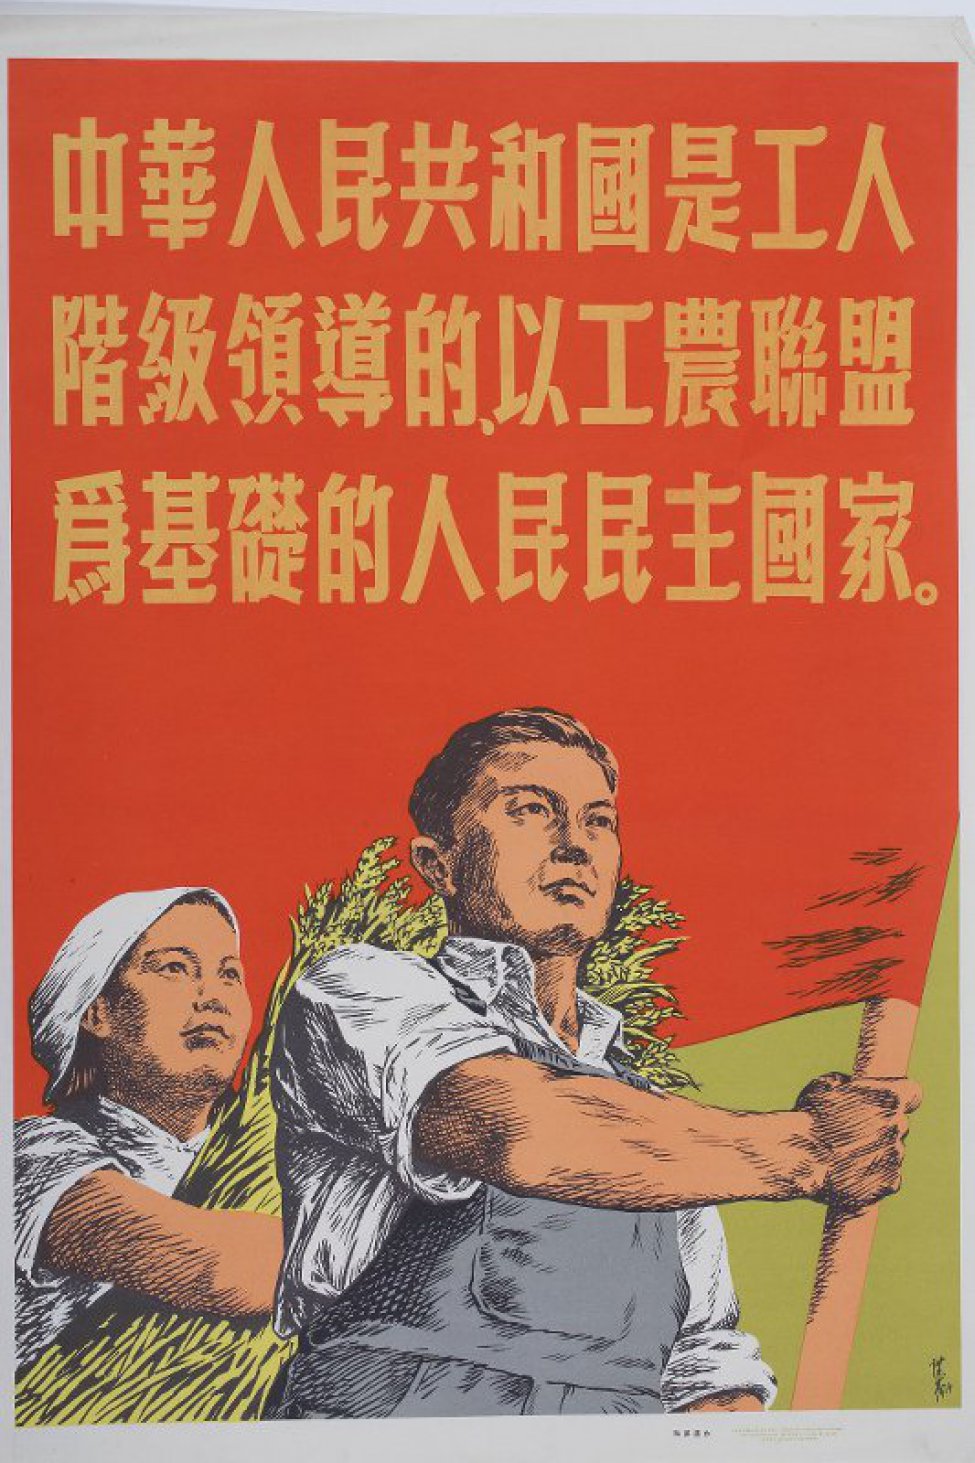 Изображены погрудно мужчина с Красным знаменем и женщина со снопом. По изображением текст из тридцати иероглифов.